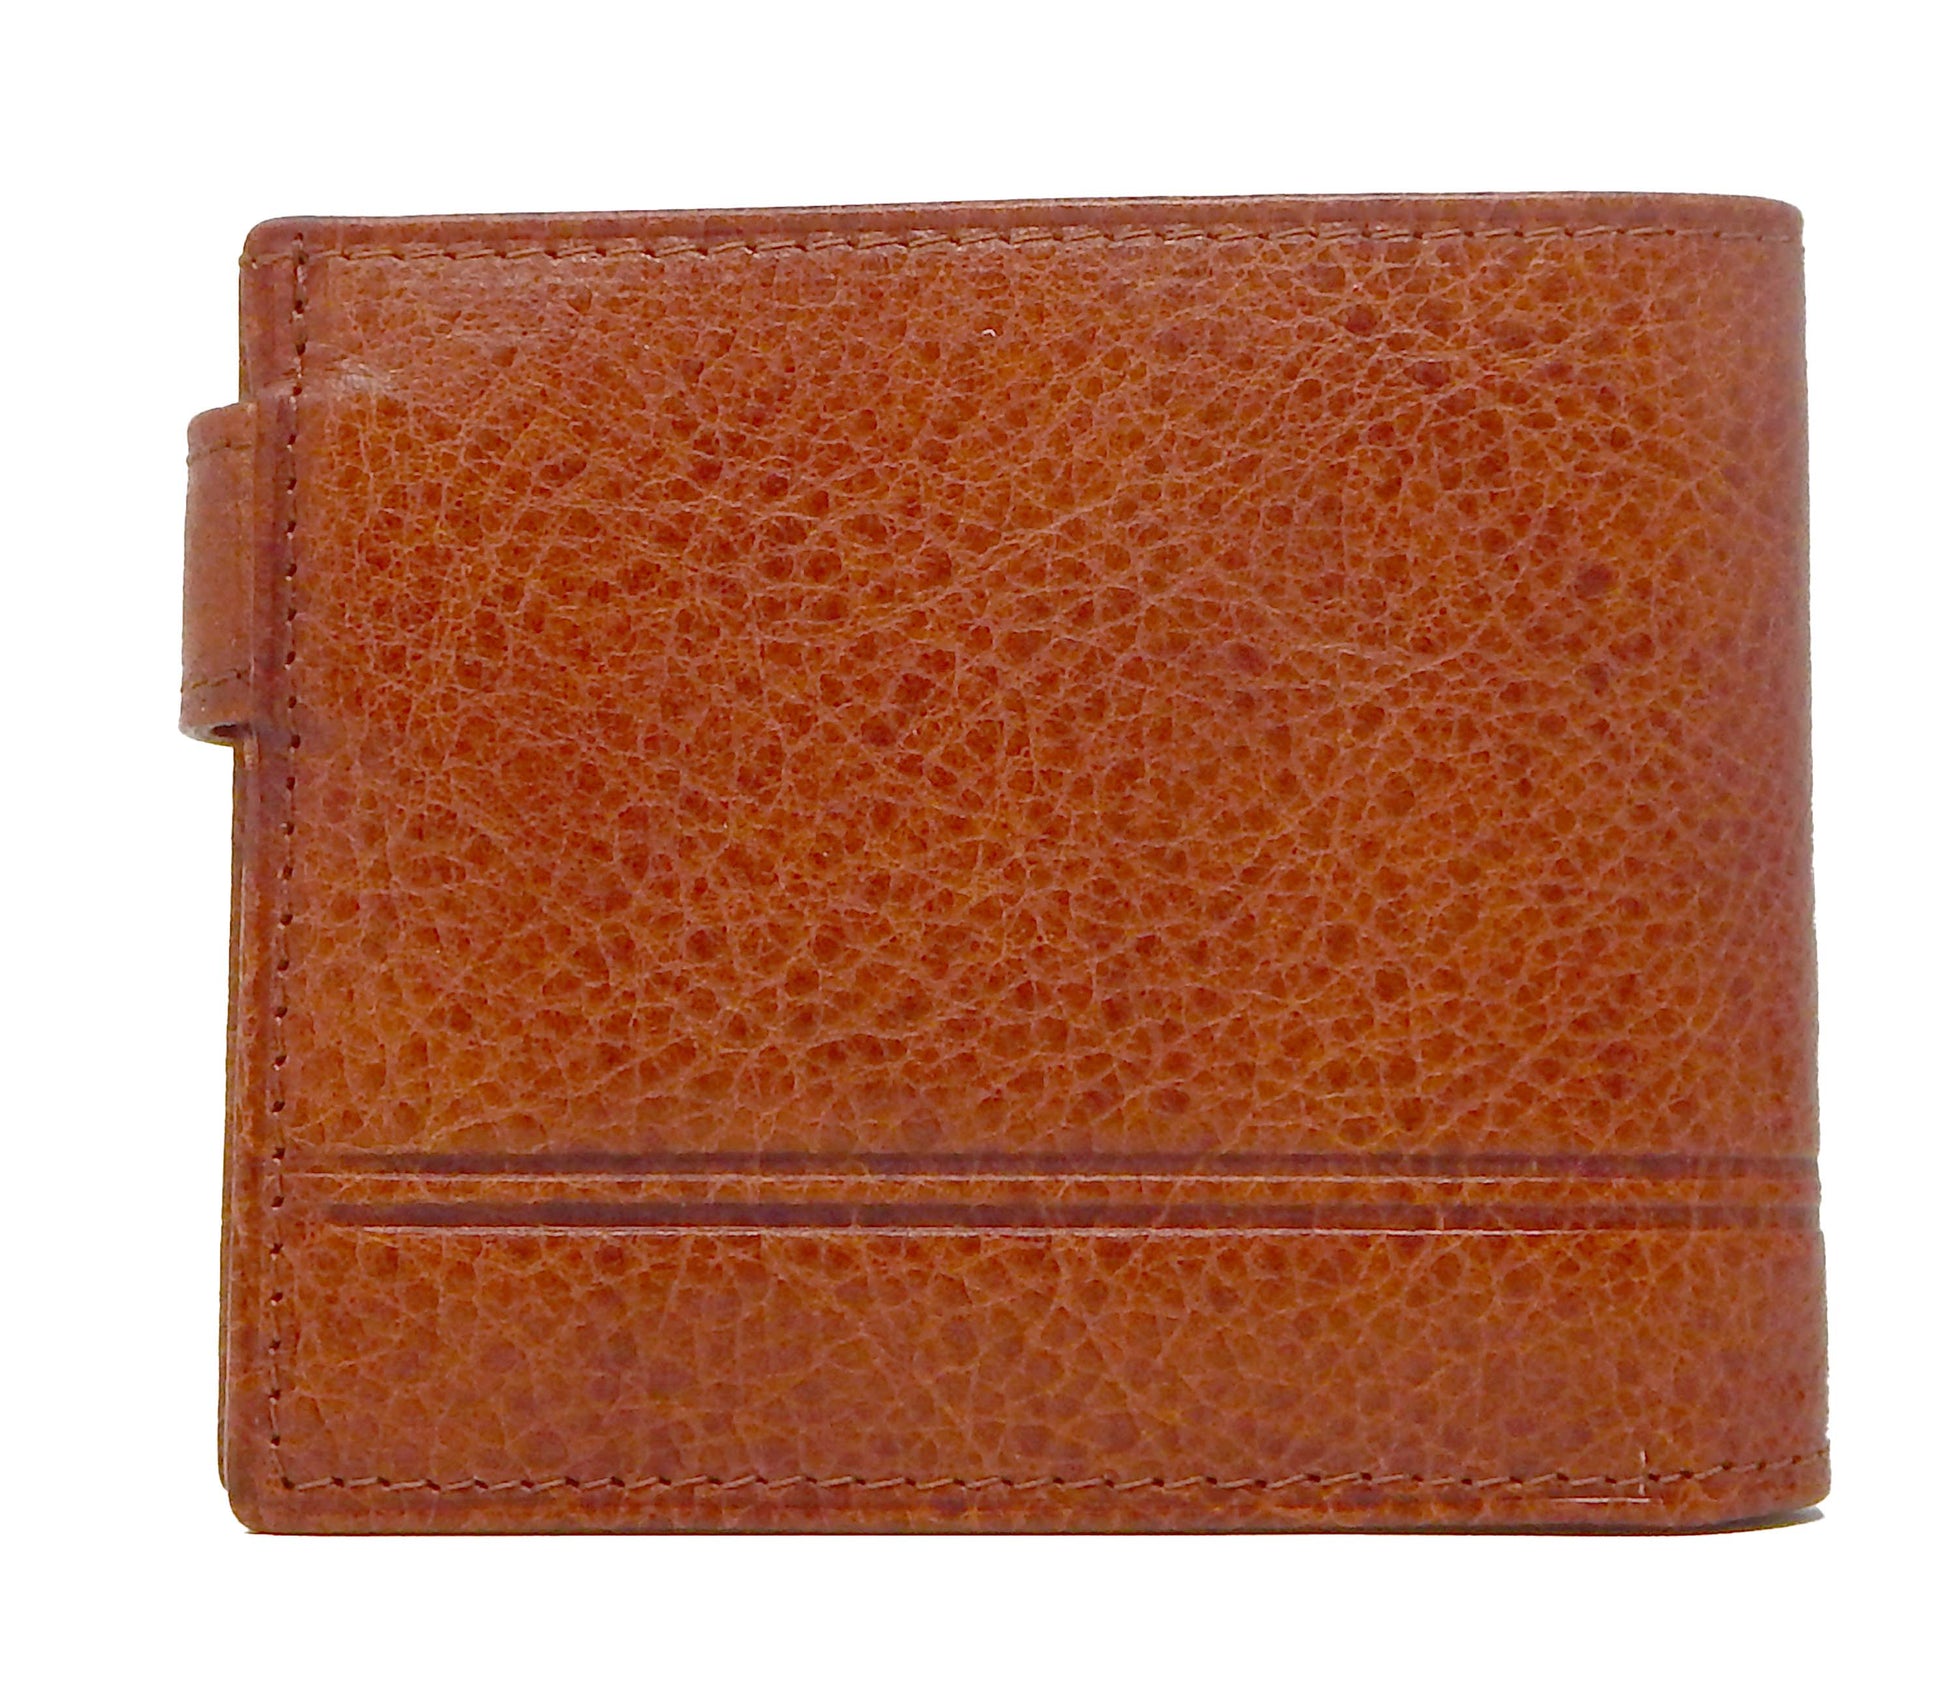 Cavalinho Men's Trifold Leather Wallet - SaddleBrown - 28610586.13.99_3